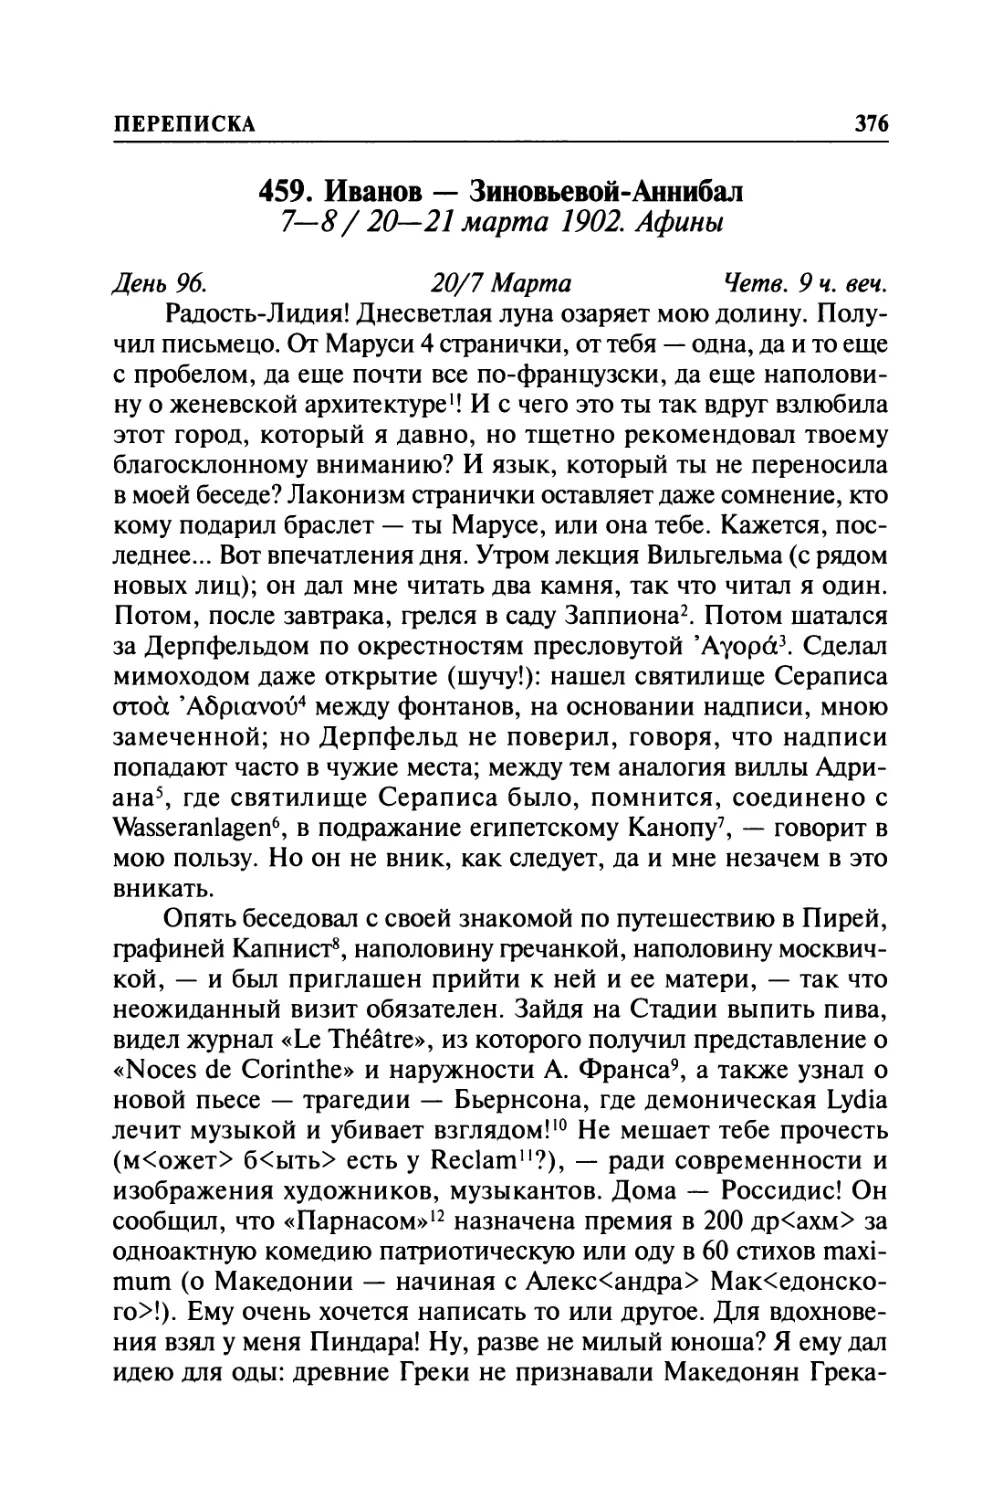 459. Иванов — Зиновьевой-Аннибал. 7—8/ 20—21 марта 1902. Афины